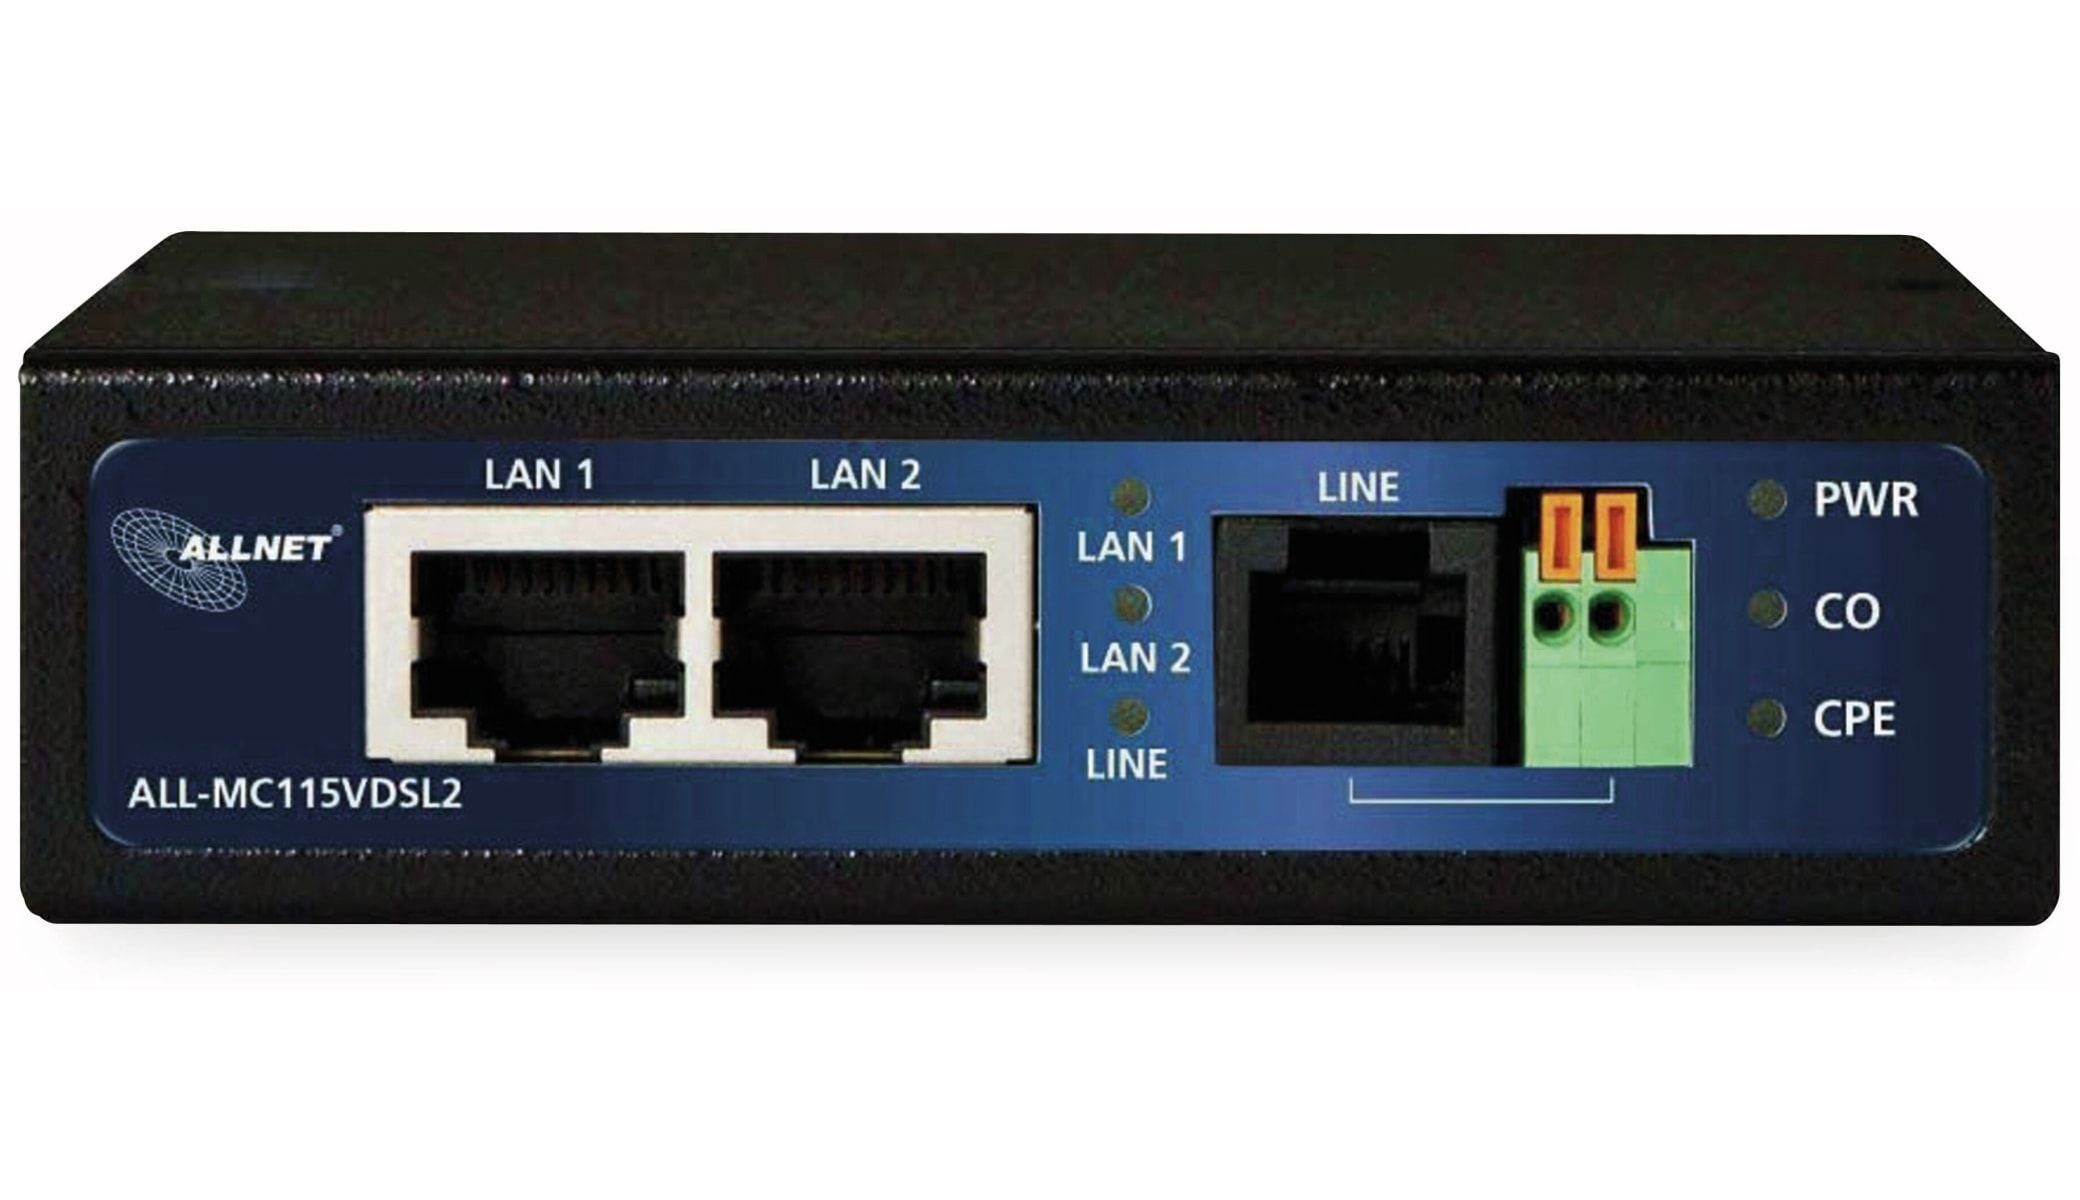 WLAN-Router Allnet ALL-MC115VDSL2, P2P-Modem unmanaged ALLNET